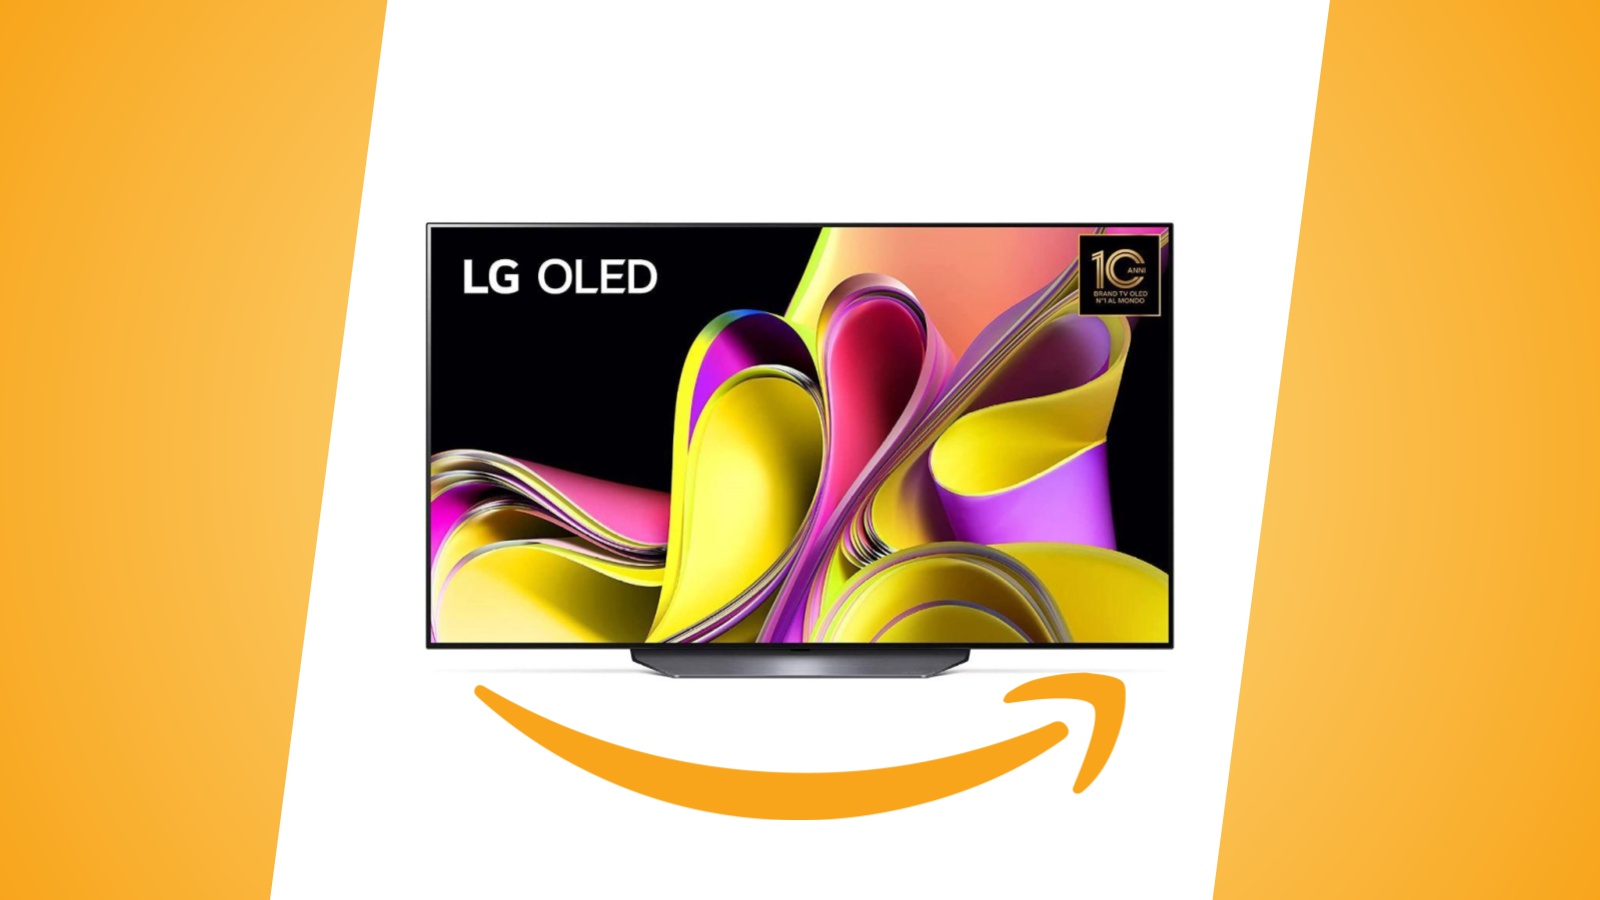 Offerte Amazon: smart TV LG OLED da 55 pollici in 4K 120 Hz con HDMI 2.1, con 400€ di rimborso